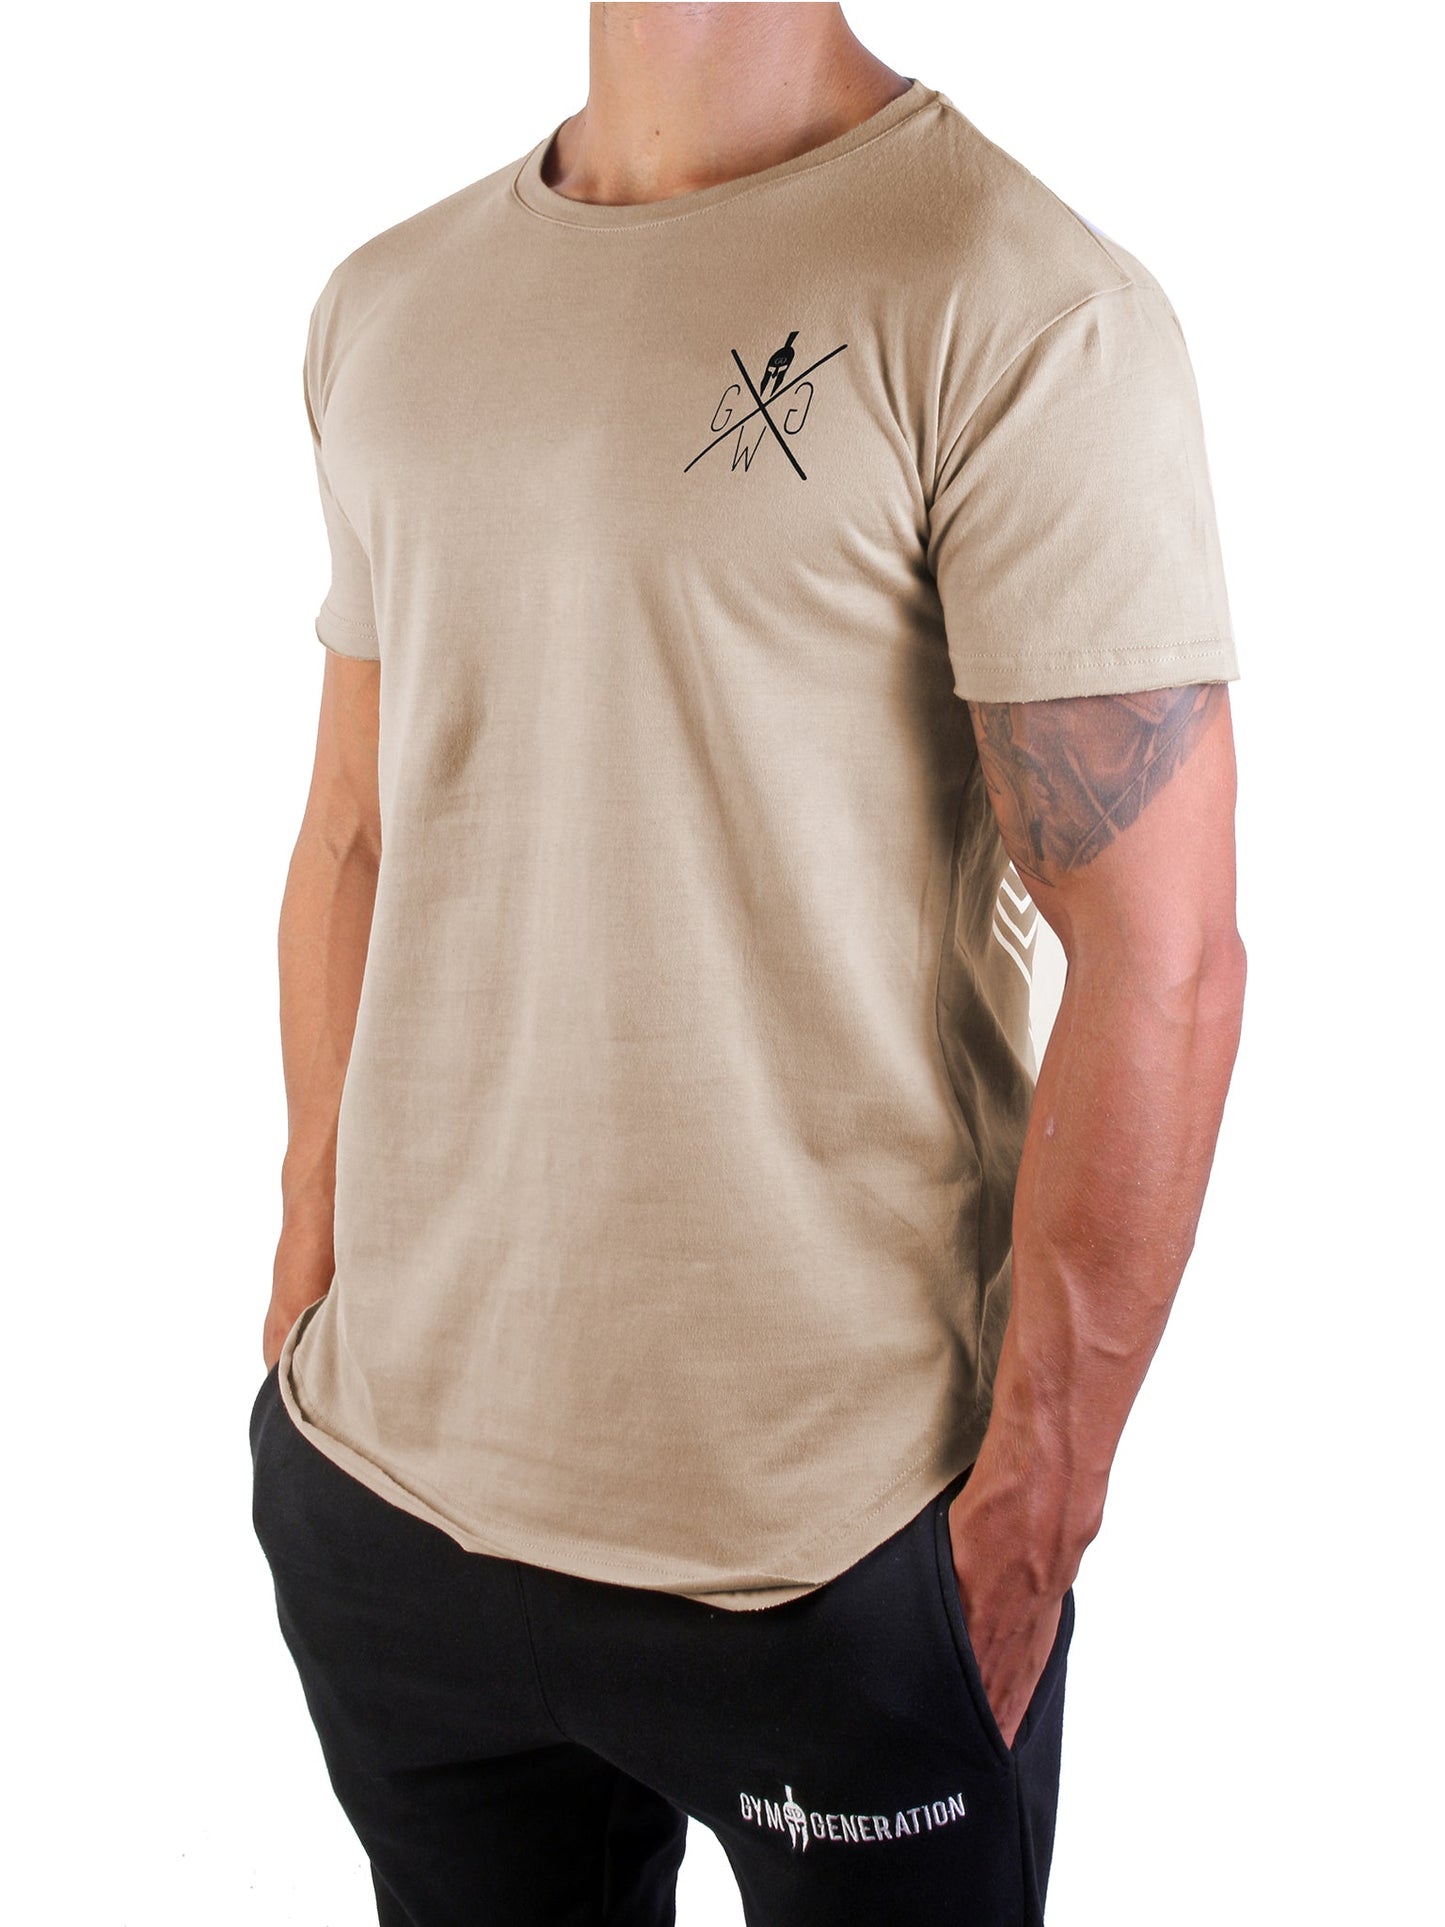 Stilvolles Valhalla T-Shirt in Beige mit kontrastierendem Warrior-Logo, perfekt für Training und Freizeit.